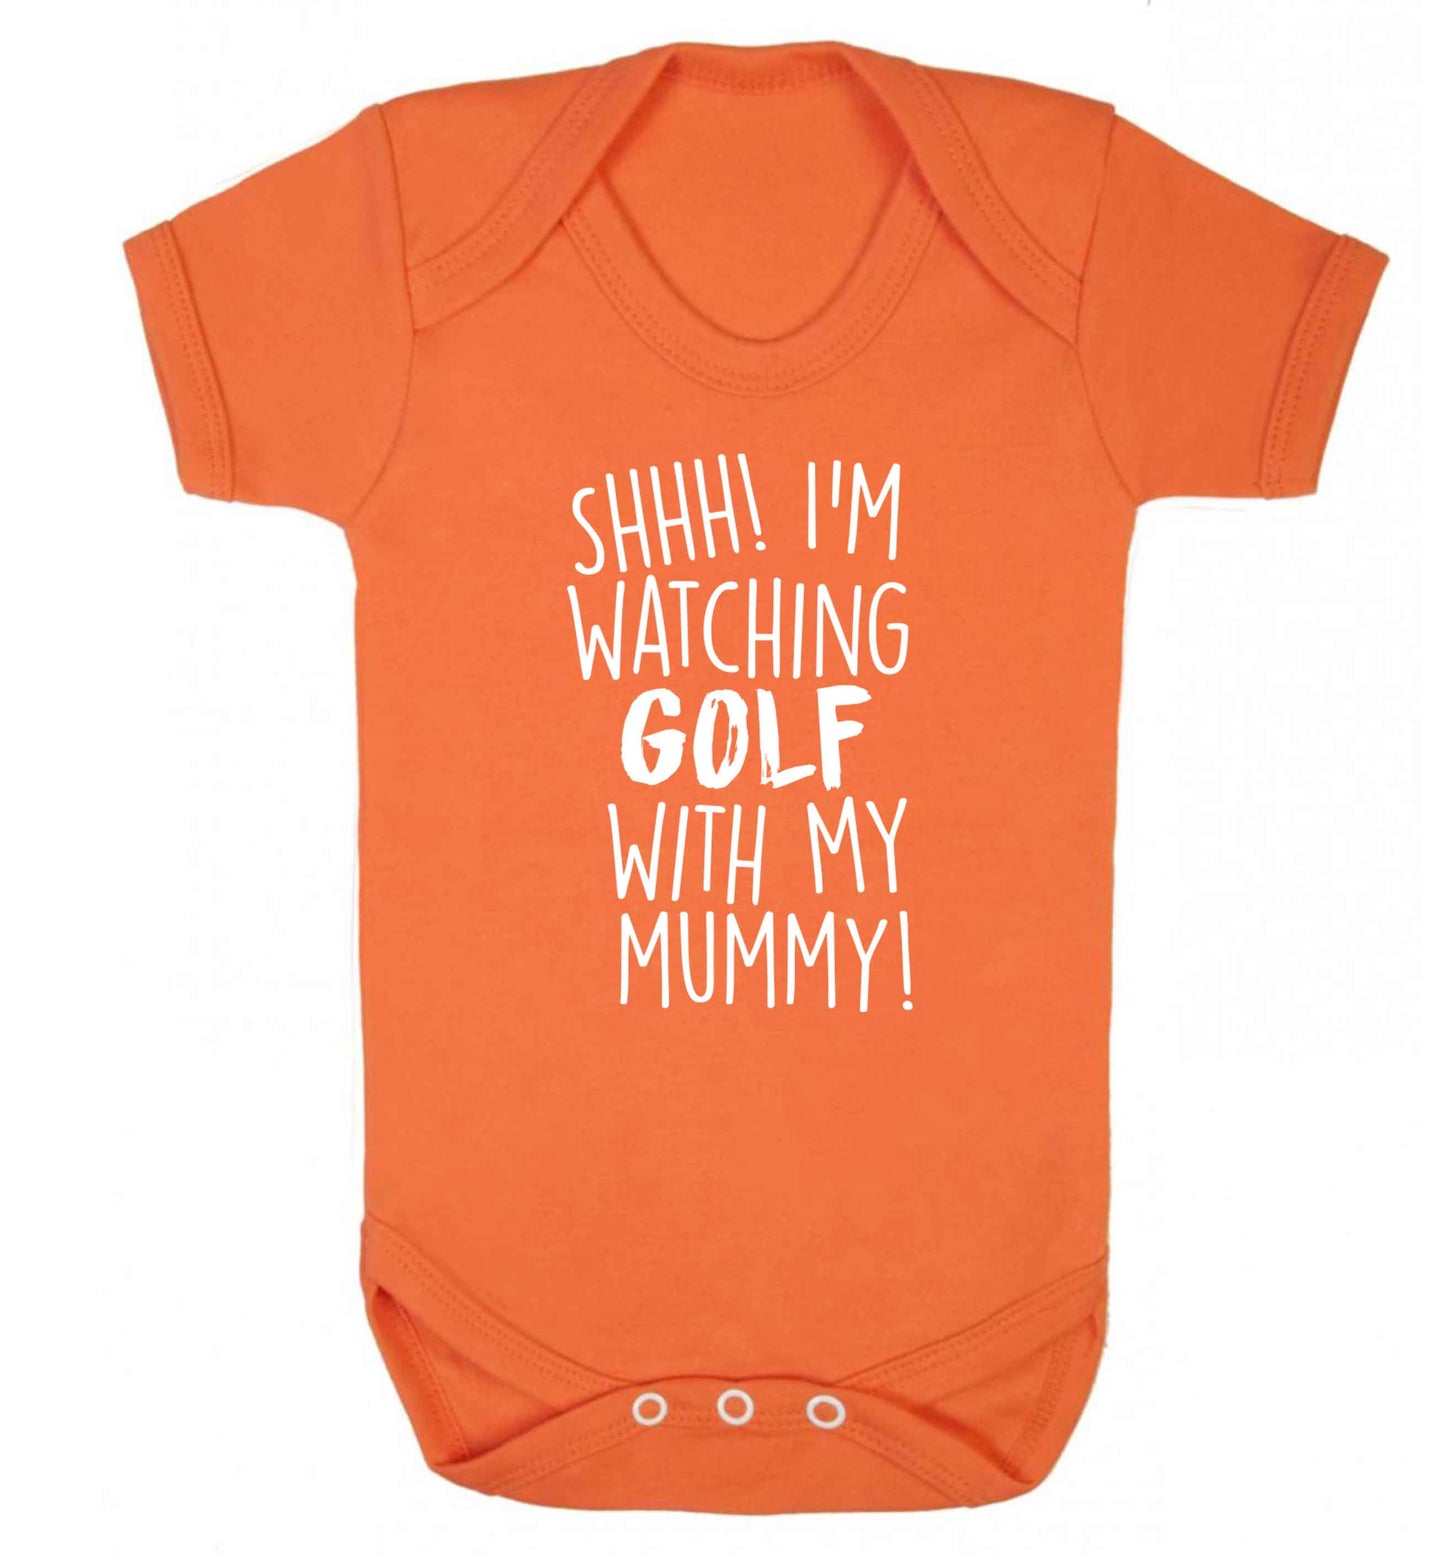 Shh I'm watching golf with my mummy Baby Vest orange 18-24 months